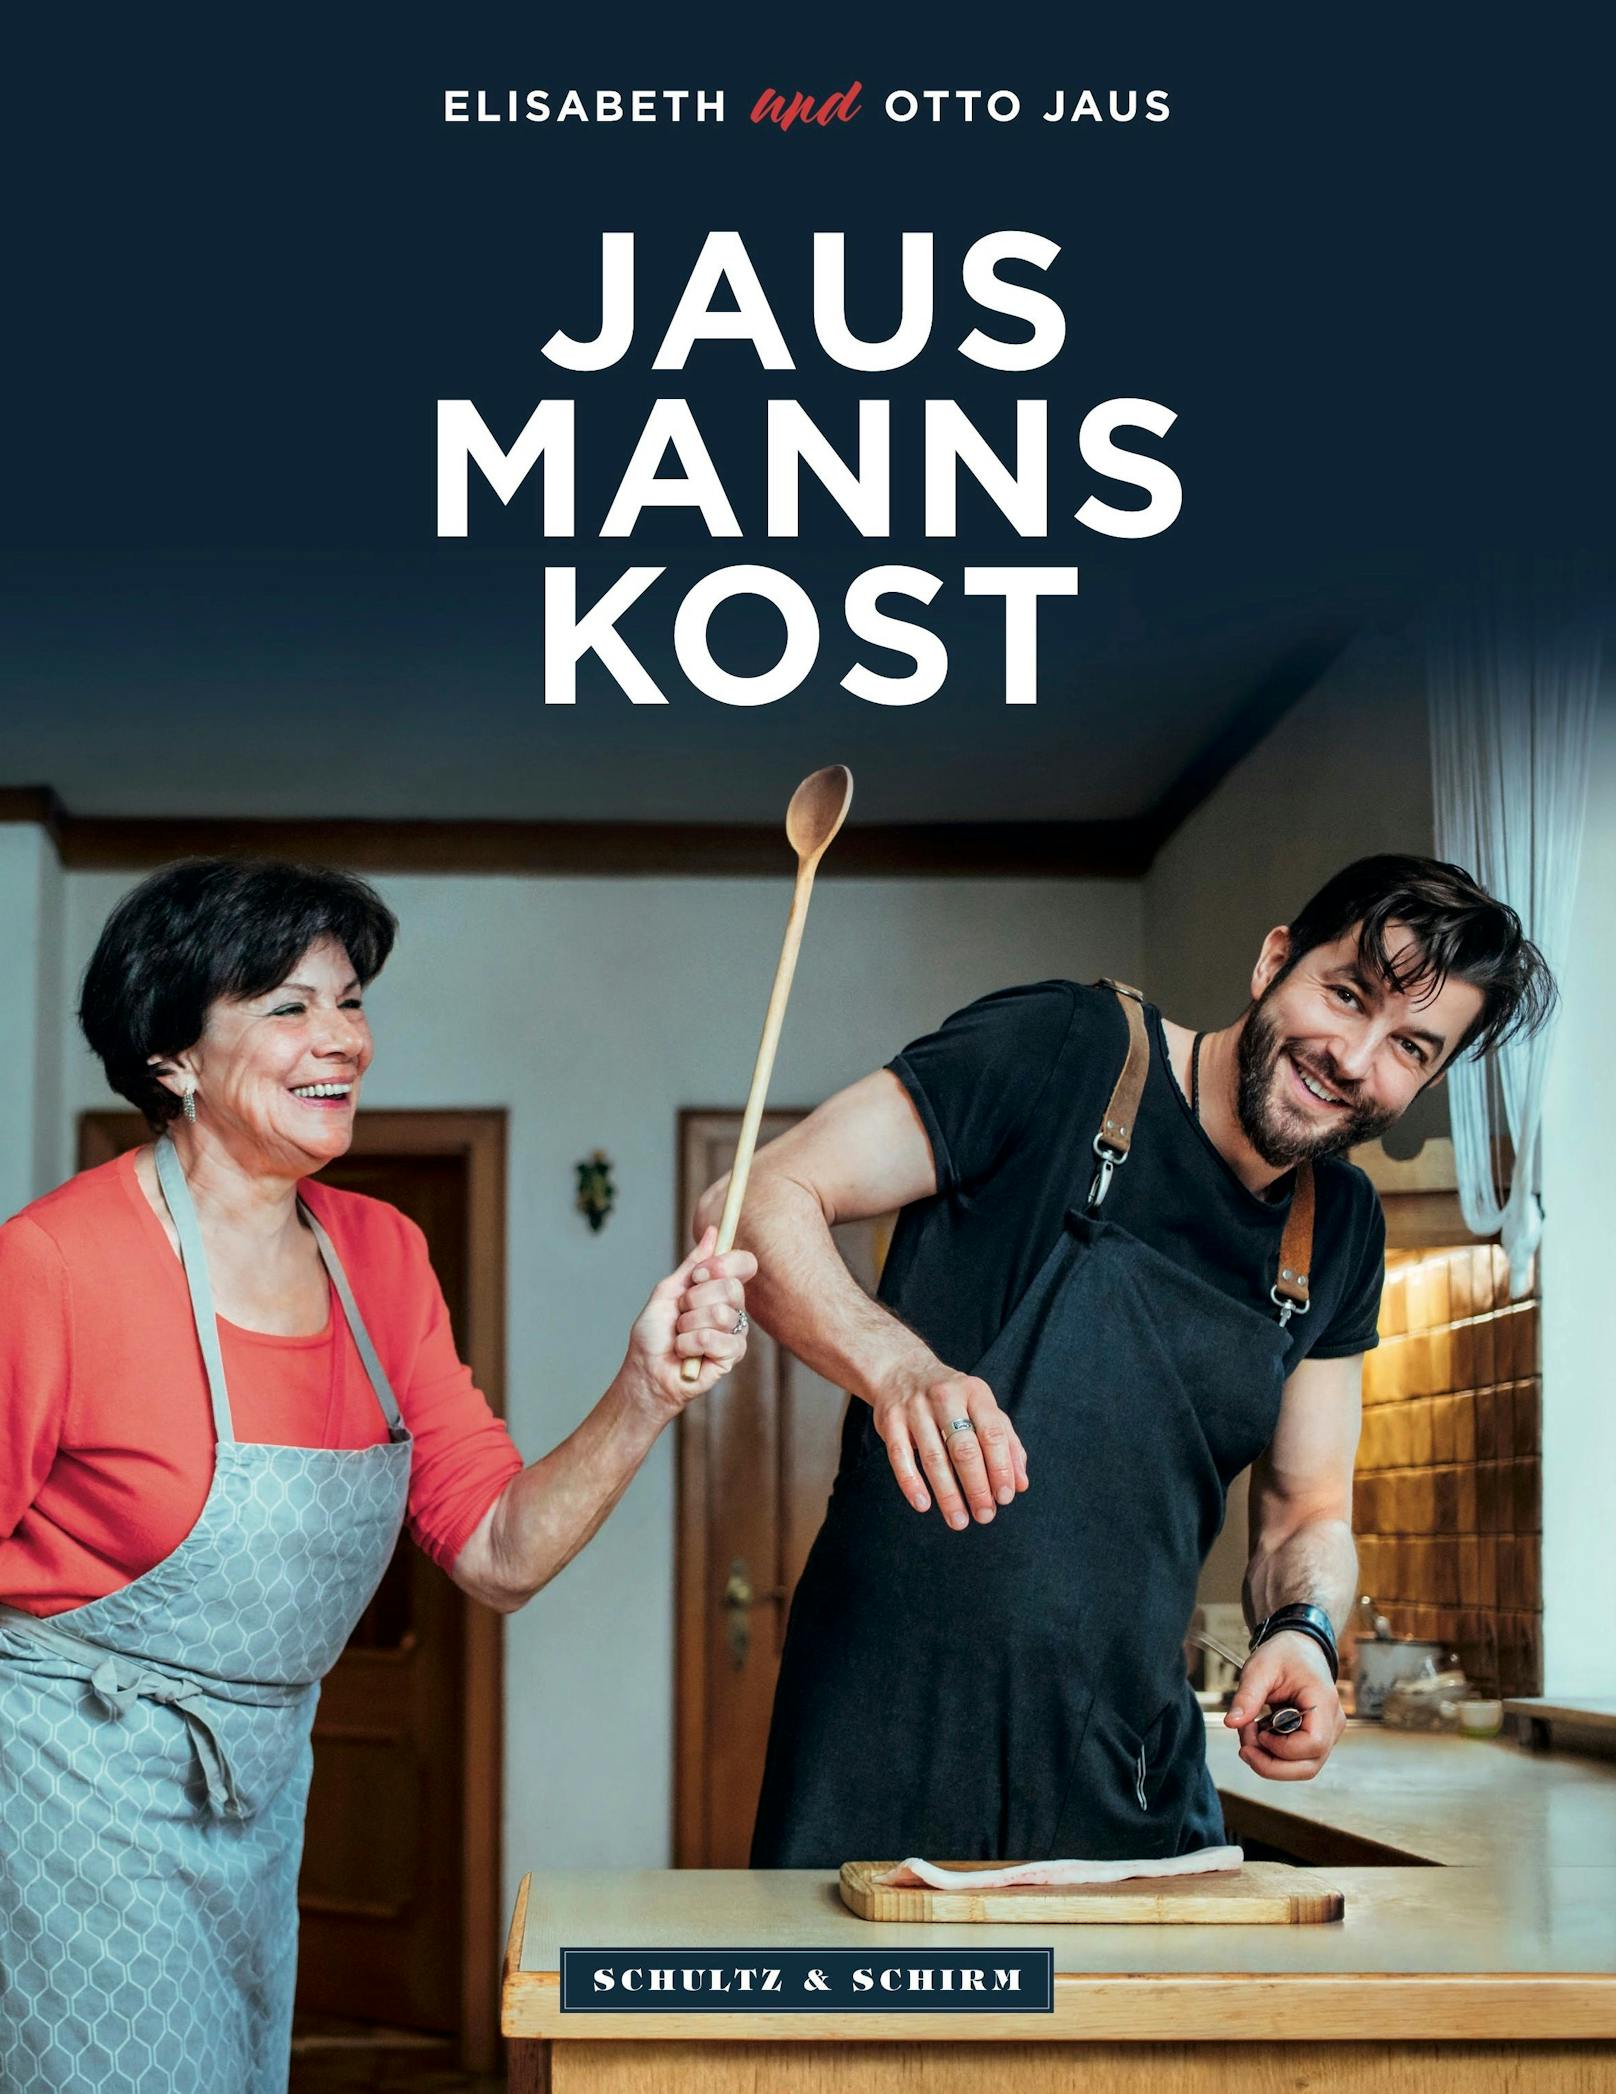 Otto Jaus bringt mit seiner Mama Elisabeth das Buch "Jausmannskost" auf den Markt 